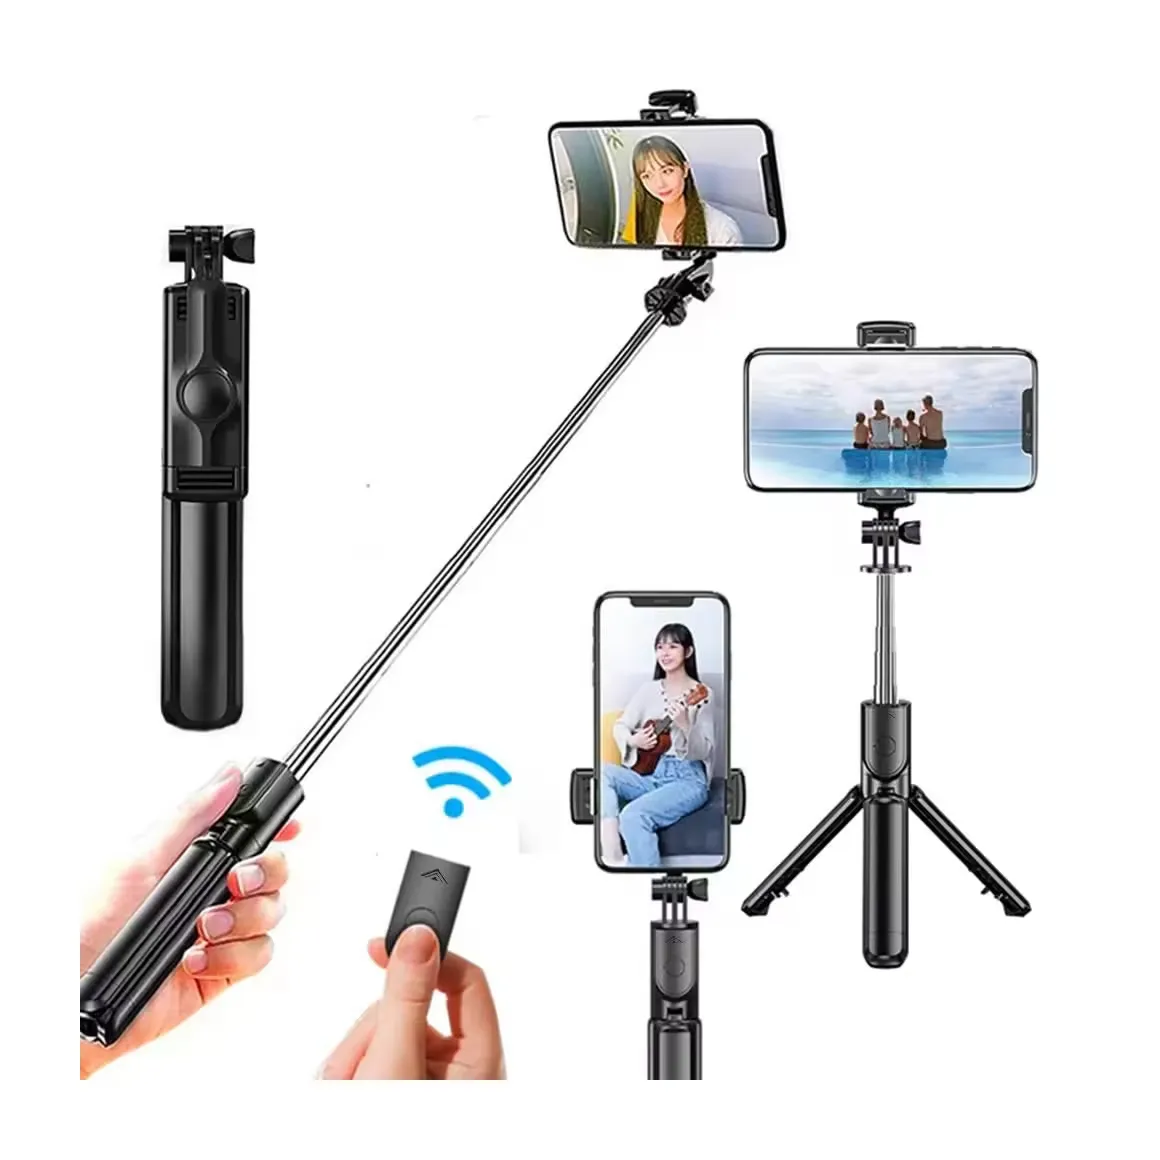 Tripé universal para selfie, bastão telescópico multifuncional, portátil, estável e anti-vibração, ideal para selfies, mais vendido